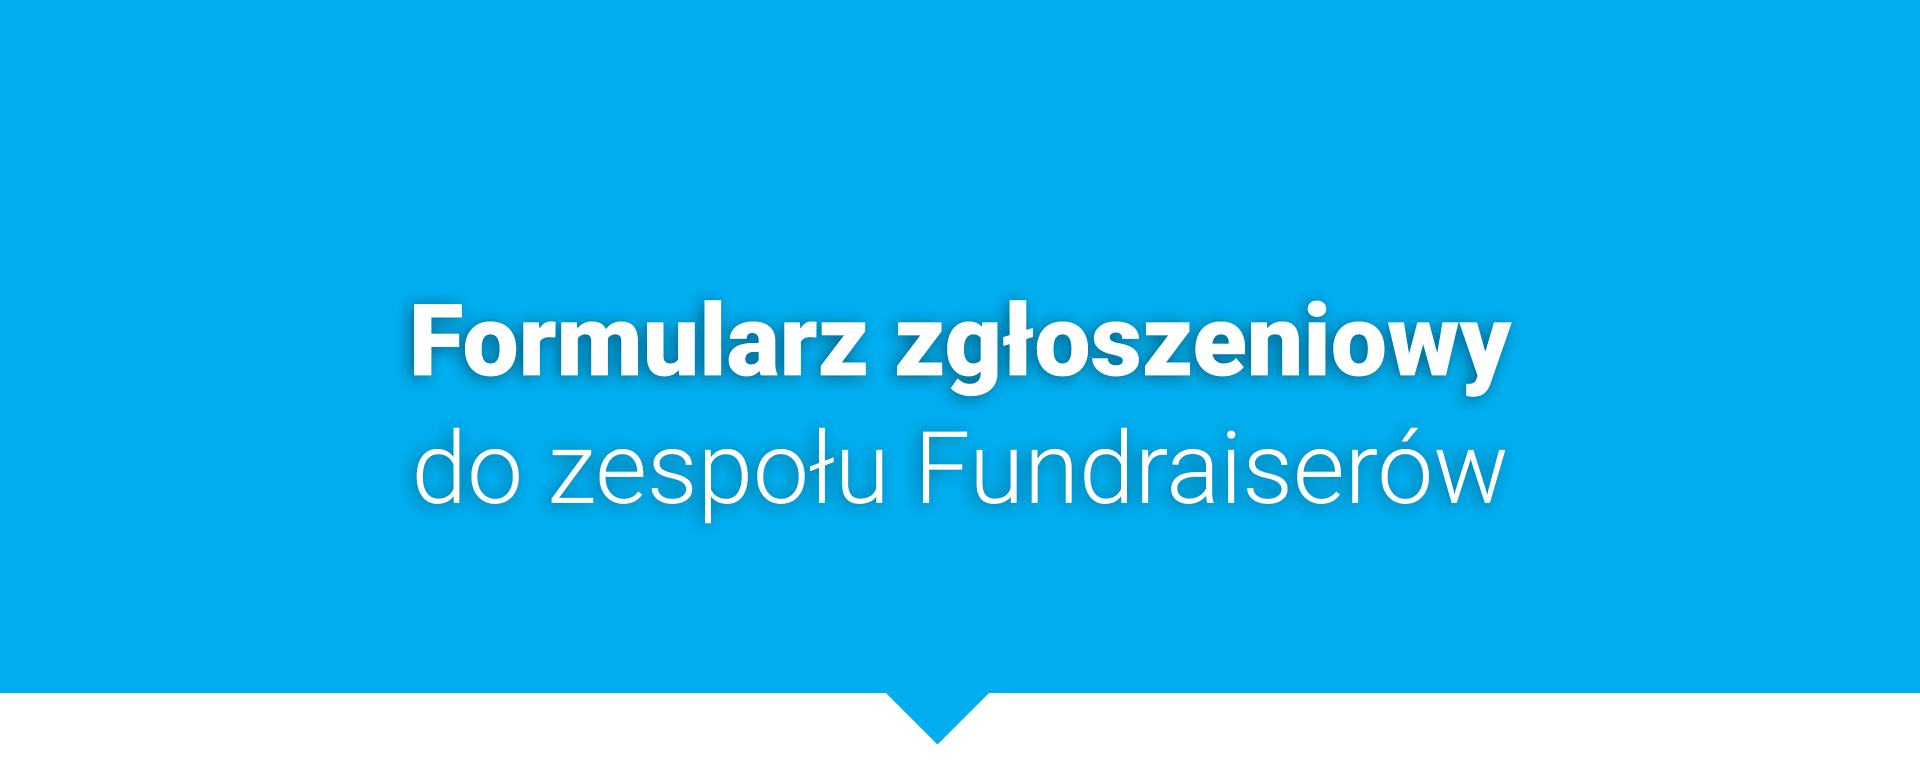 Dołącz do zespołu Fundraiserów UNICEF Polska!